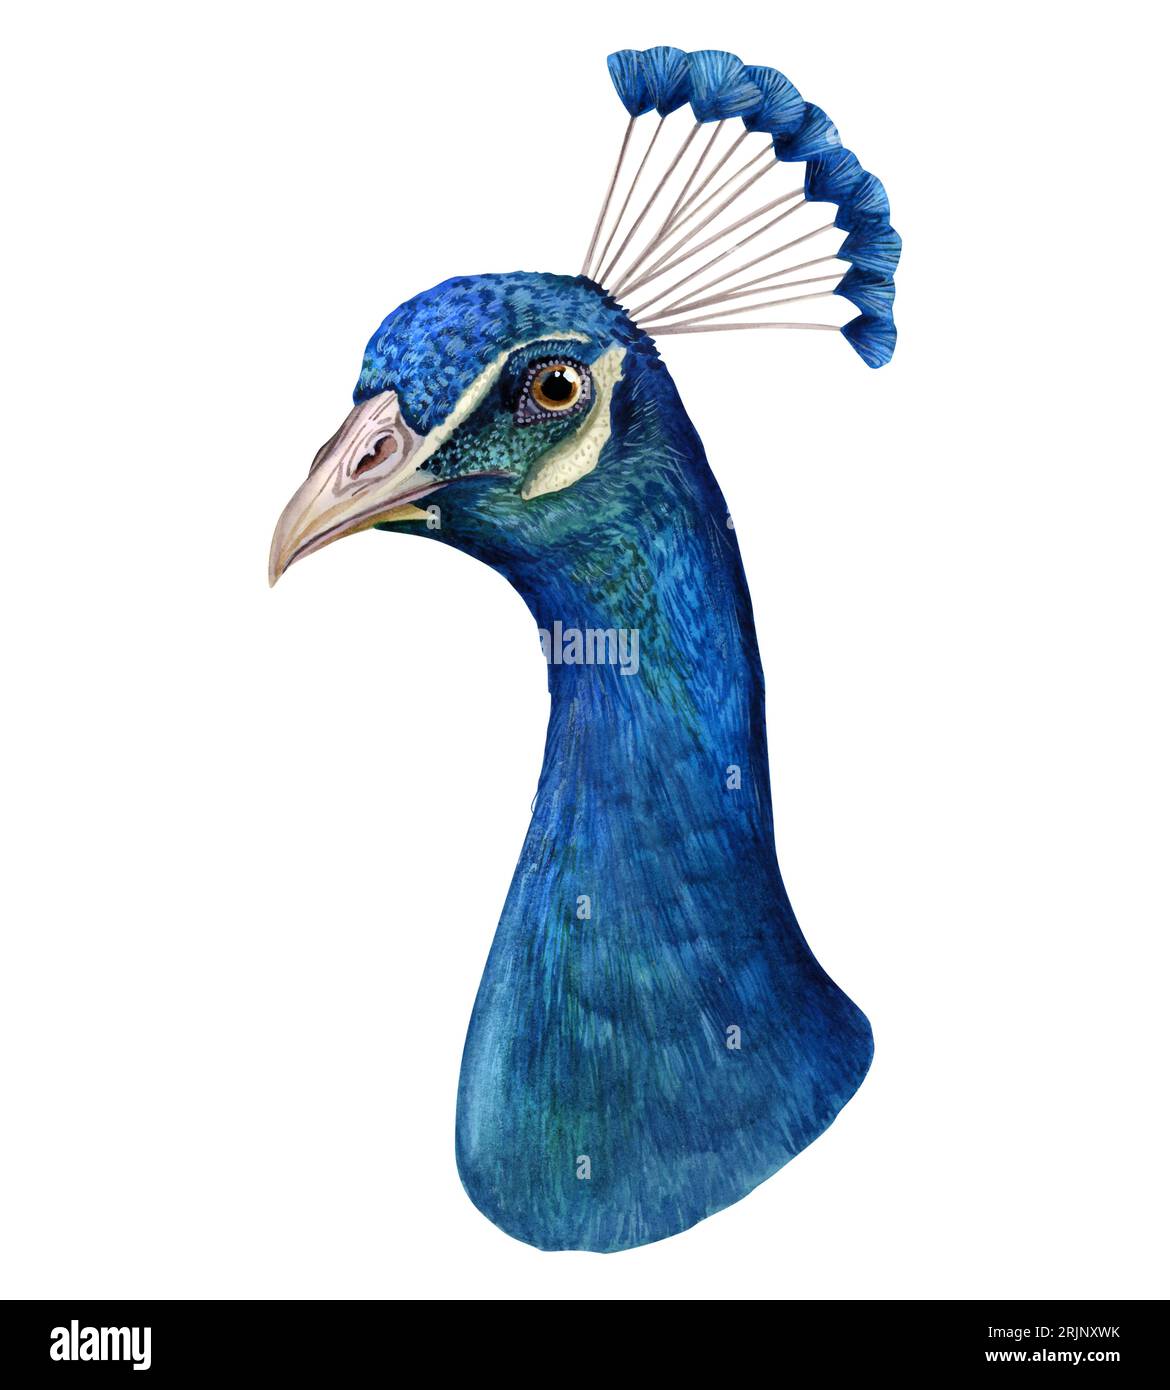 Pluma pájaro pavo pluma pavo real asiático, pluma, pintura de acuarela,  azul, blanco png